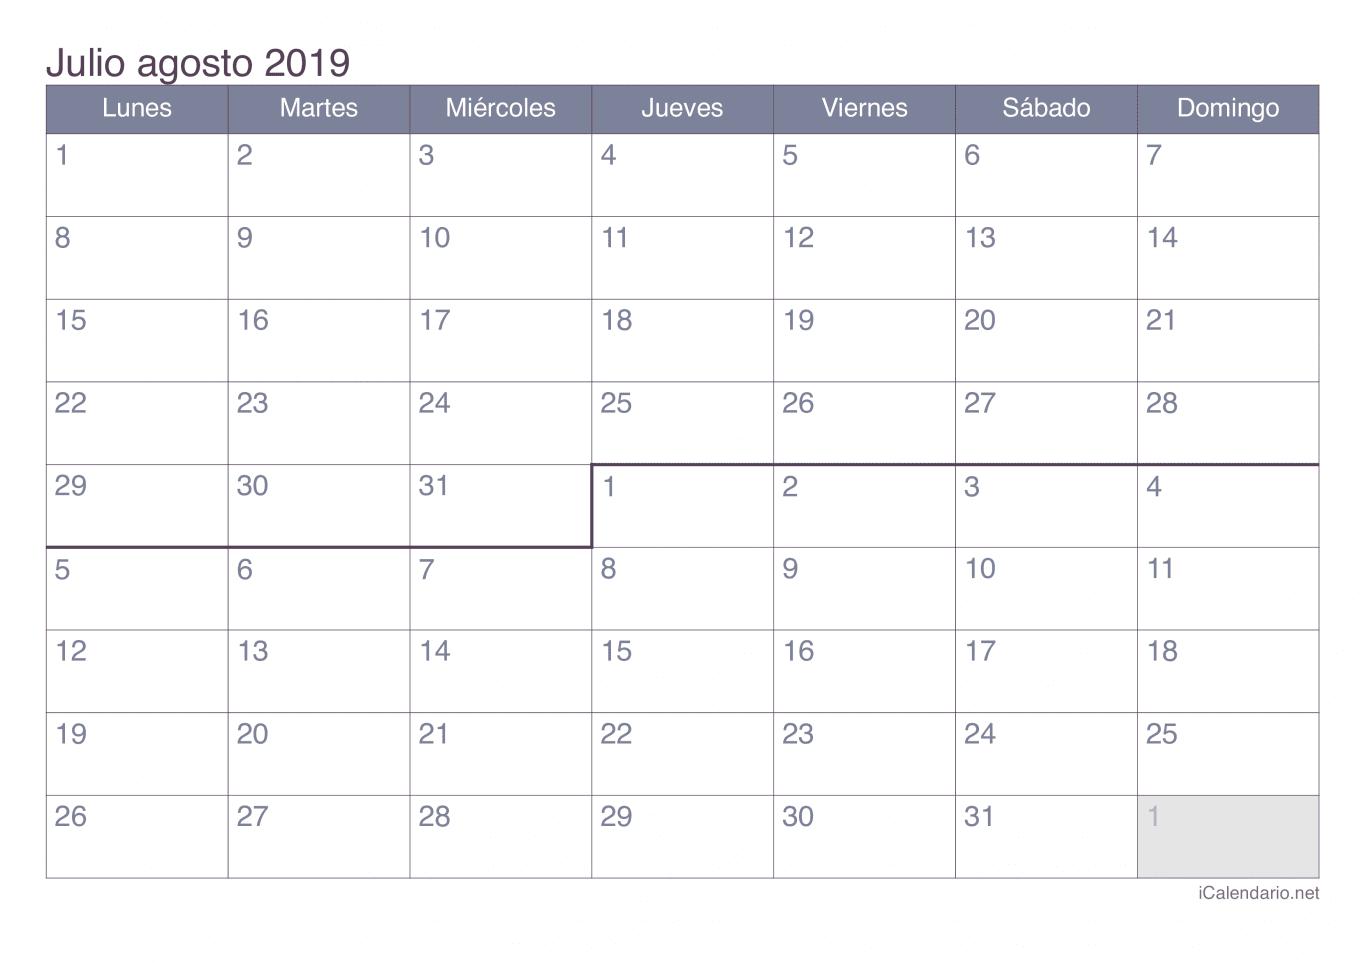 Calendario de julio agosto 2019 - Office